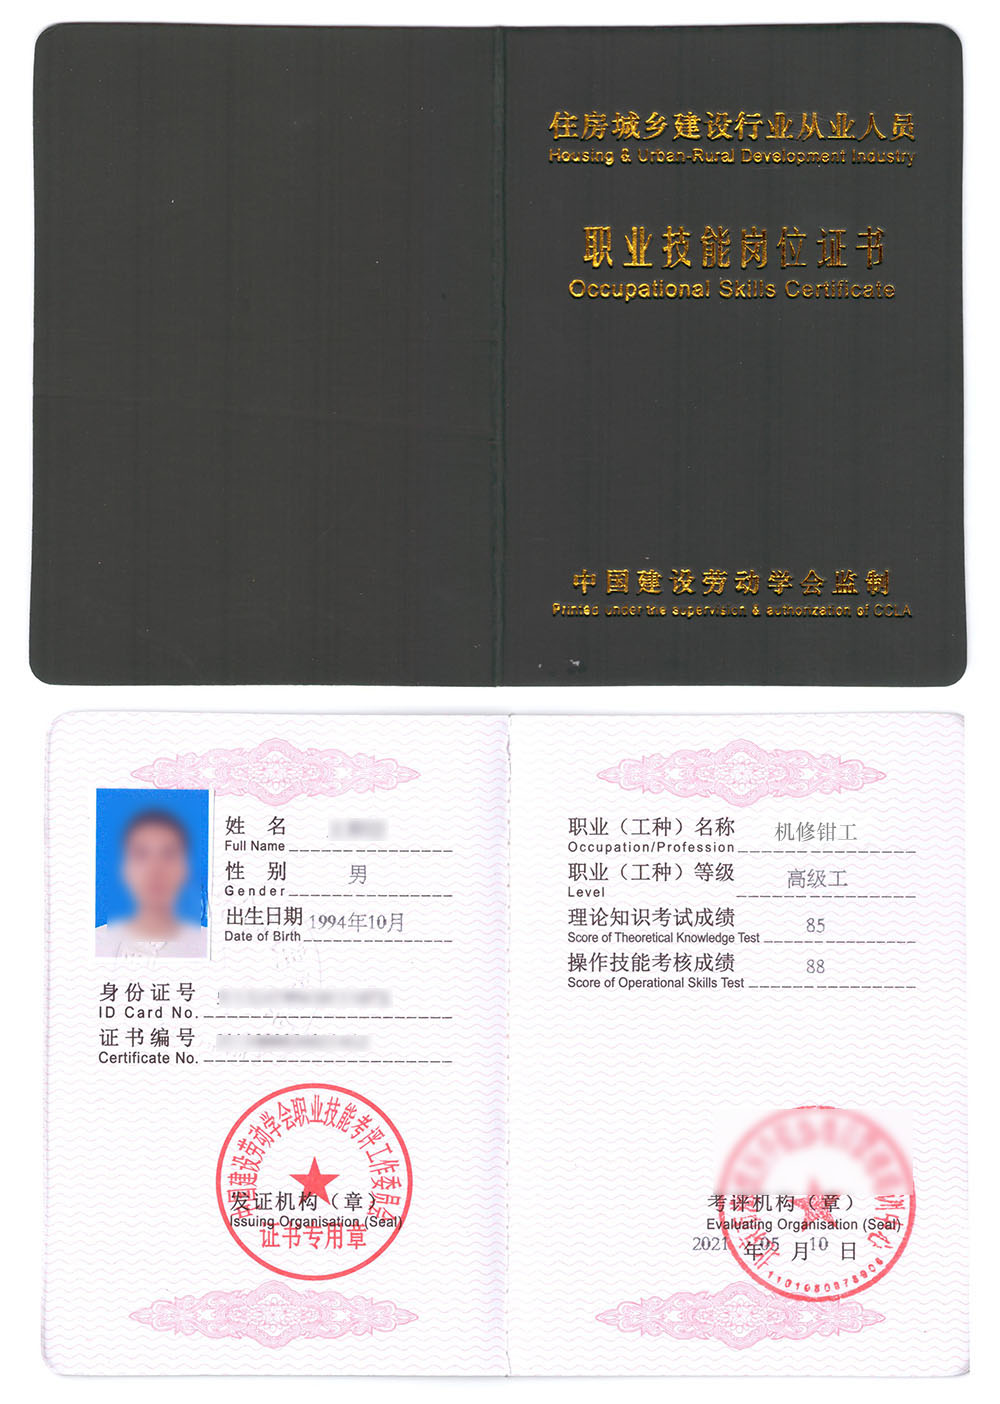 中国建设劳动学会 职业技能岗位证书 机修钳工证书样本